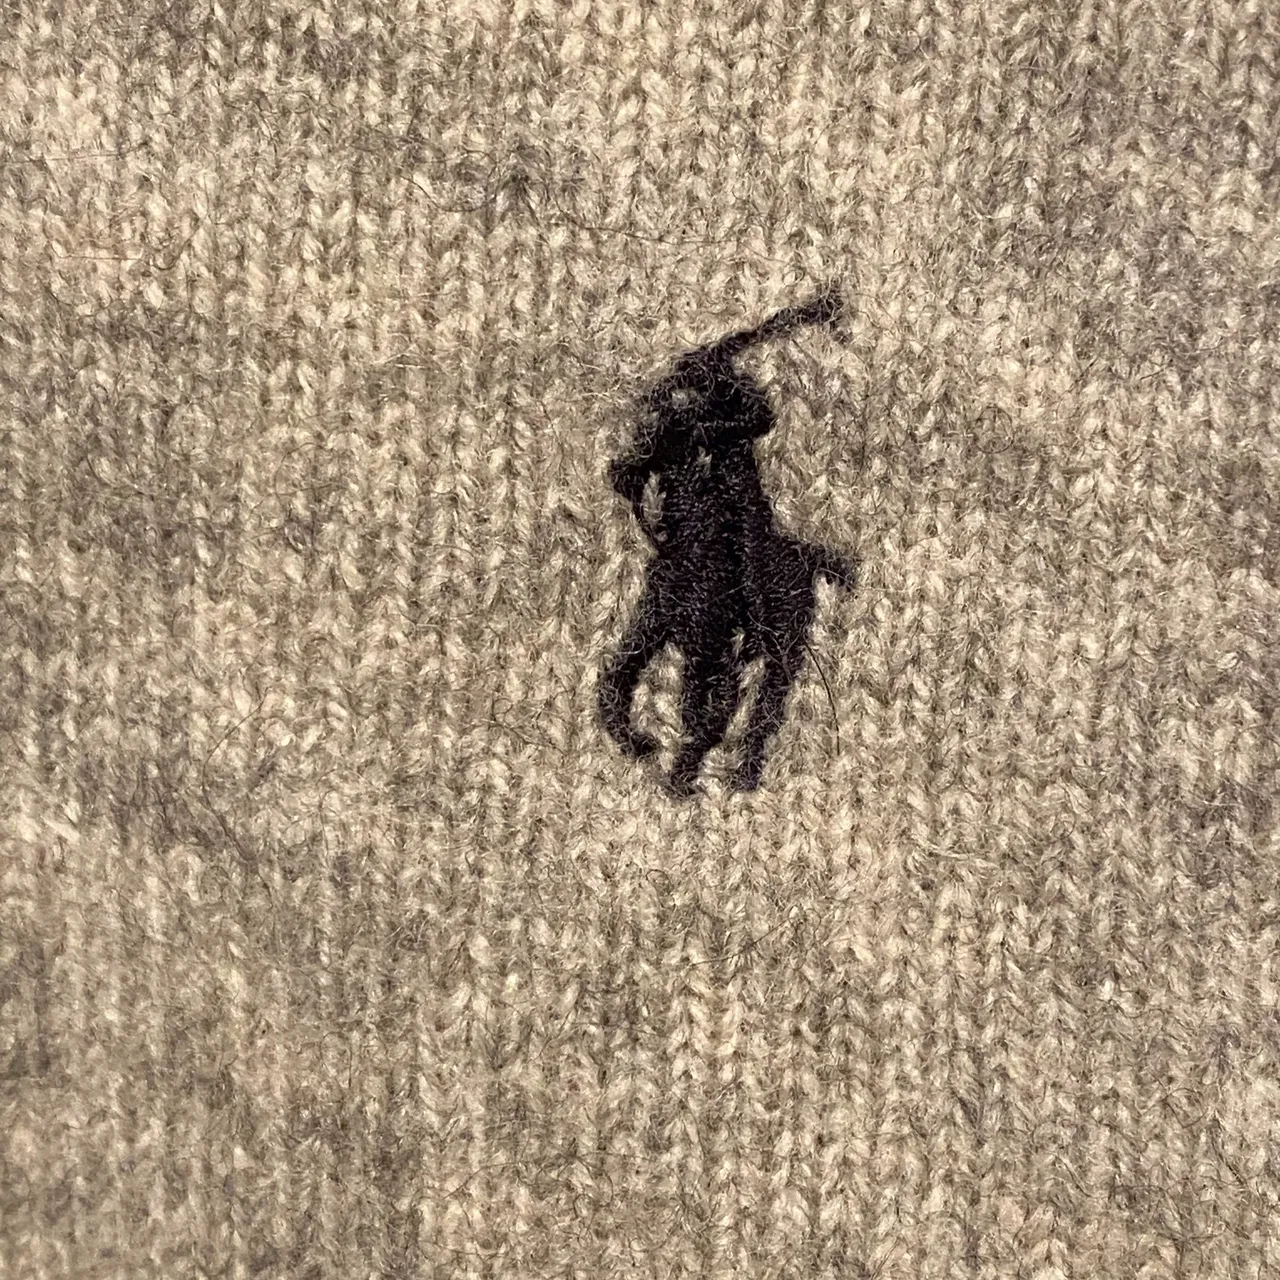 Ralph Lauren sweater knit polo shirt photo 4